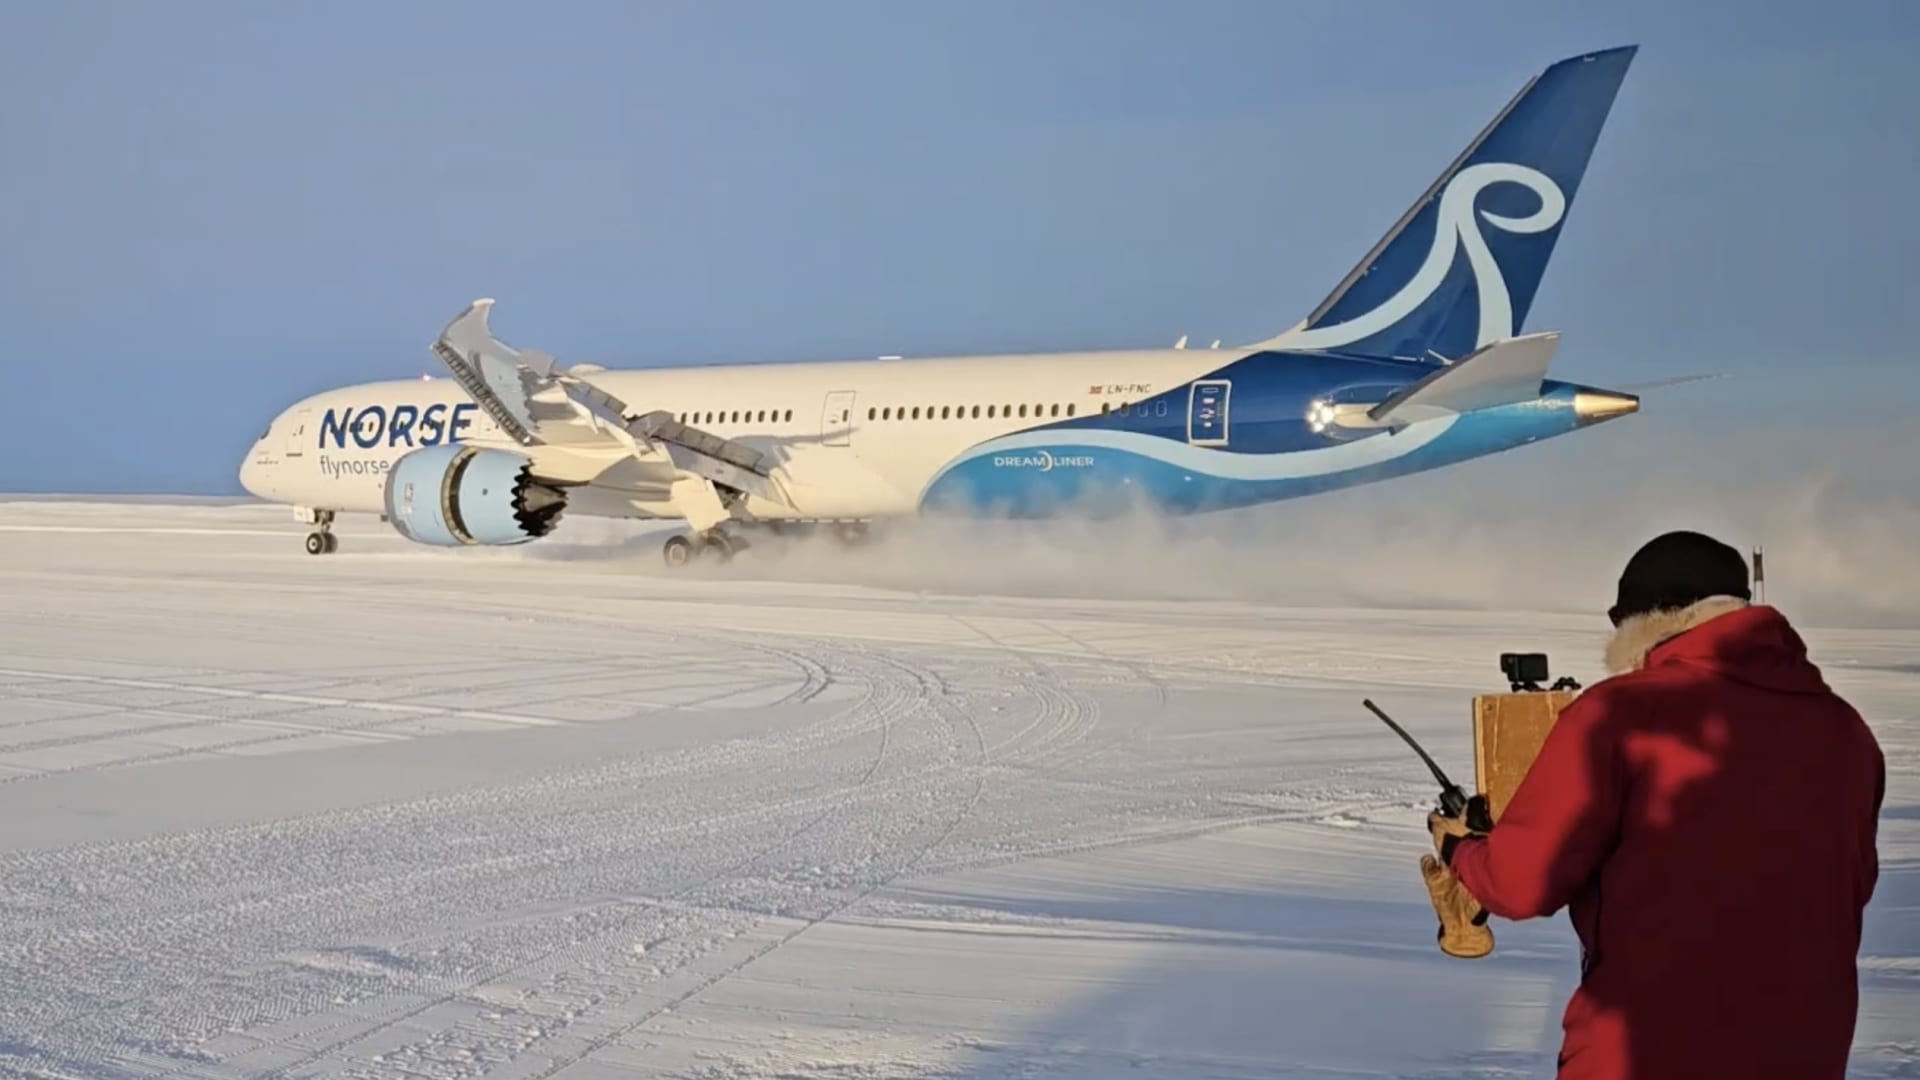 لأول مرة.. طائرة من طراز بوينغ "دريملاينر" تهبط على مدرج جليدي بالقارة القطبية الجنوبية